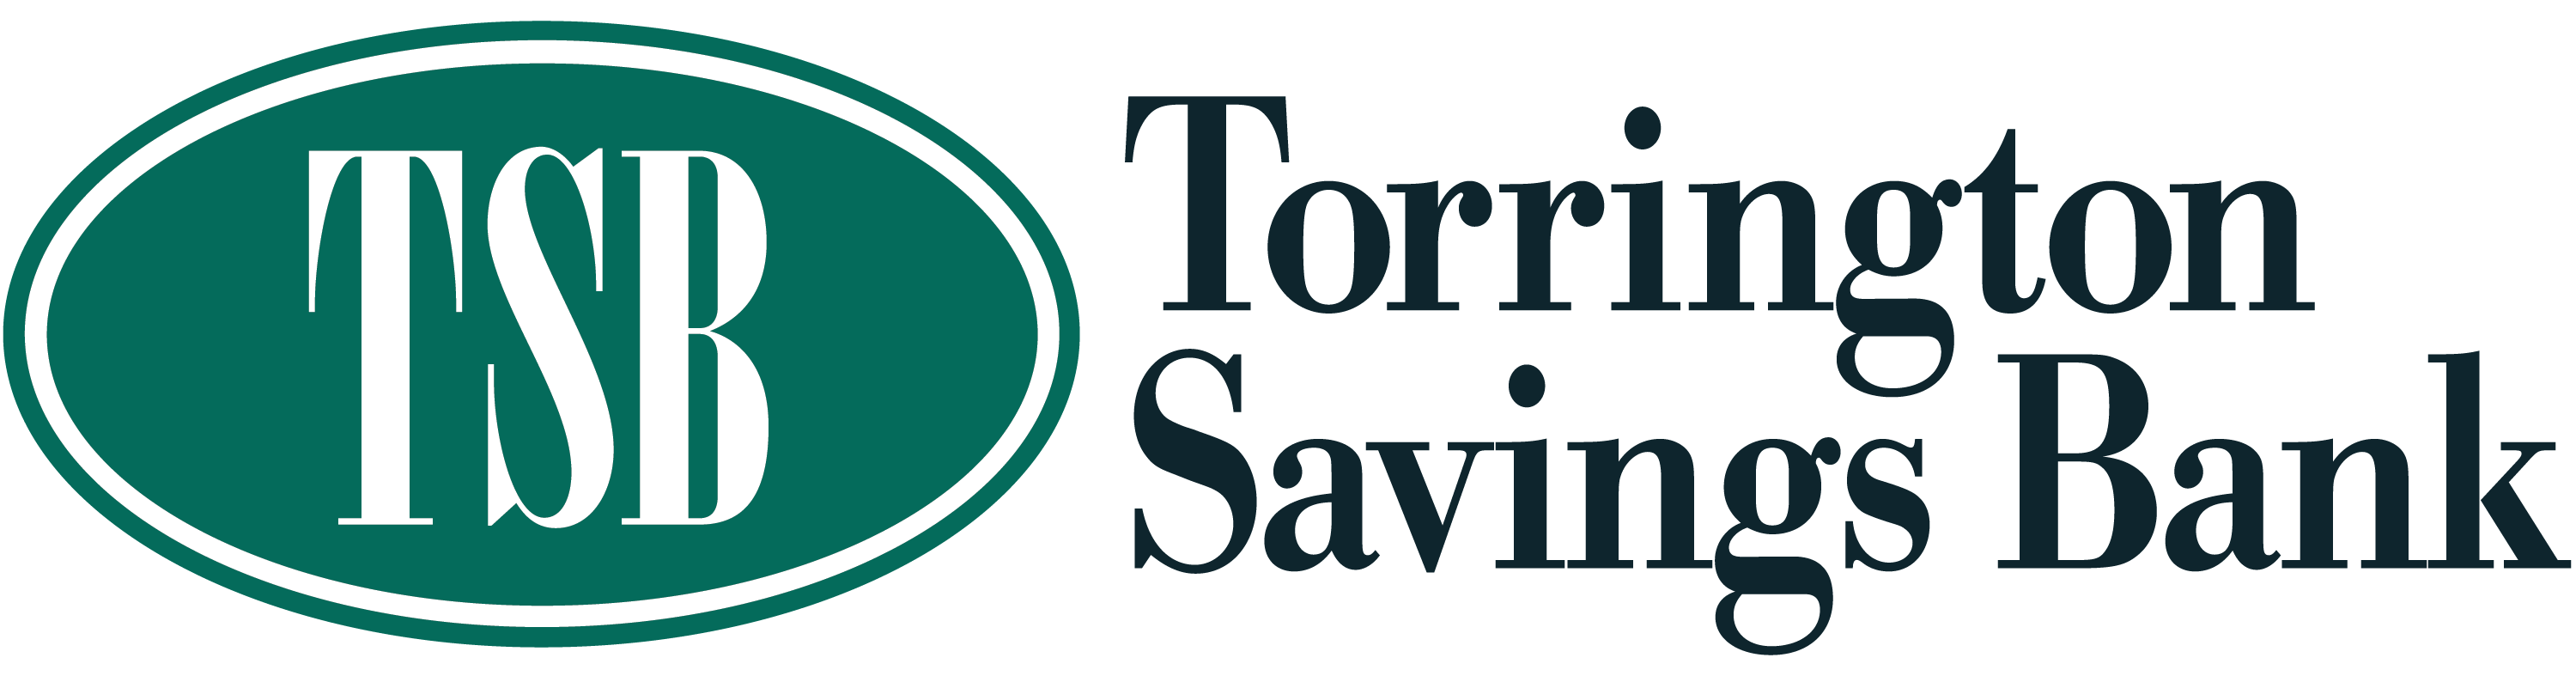 Torrington Savings Bank Logo